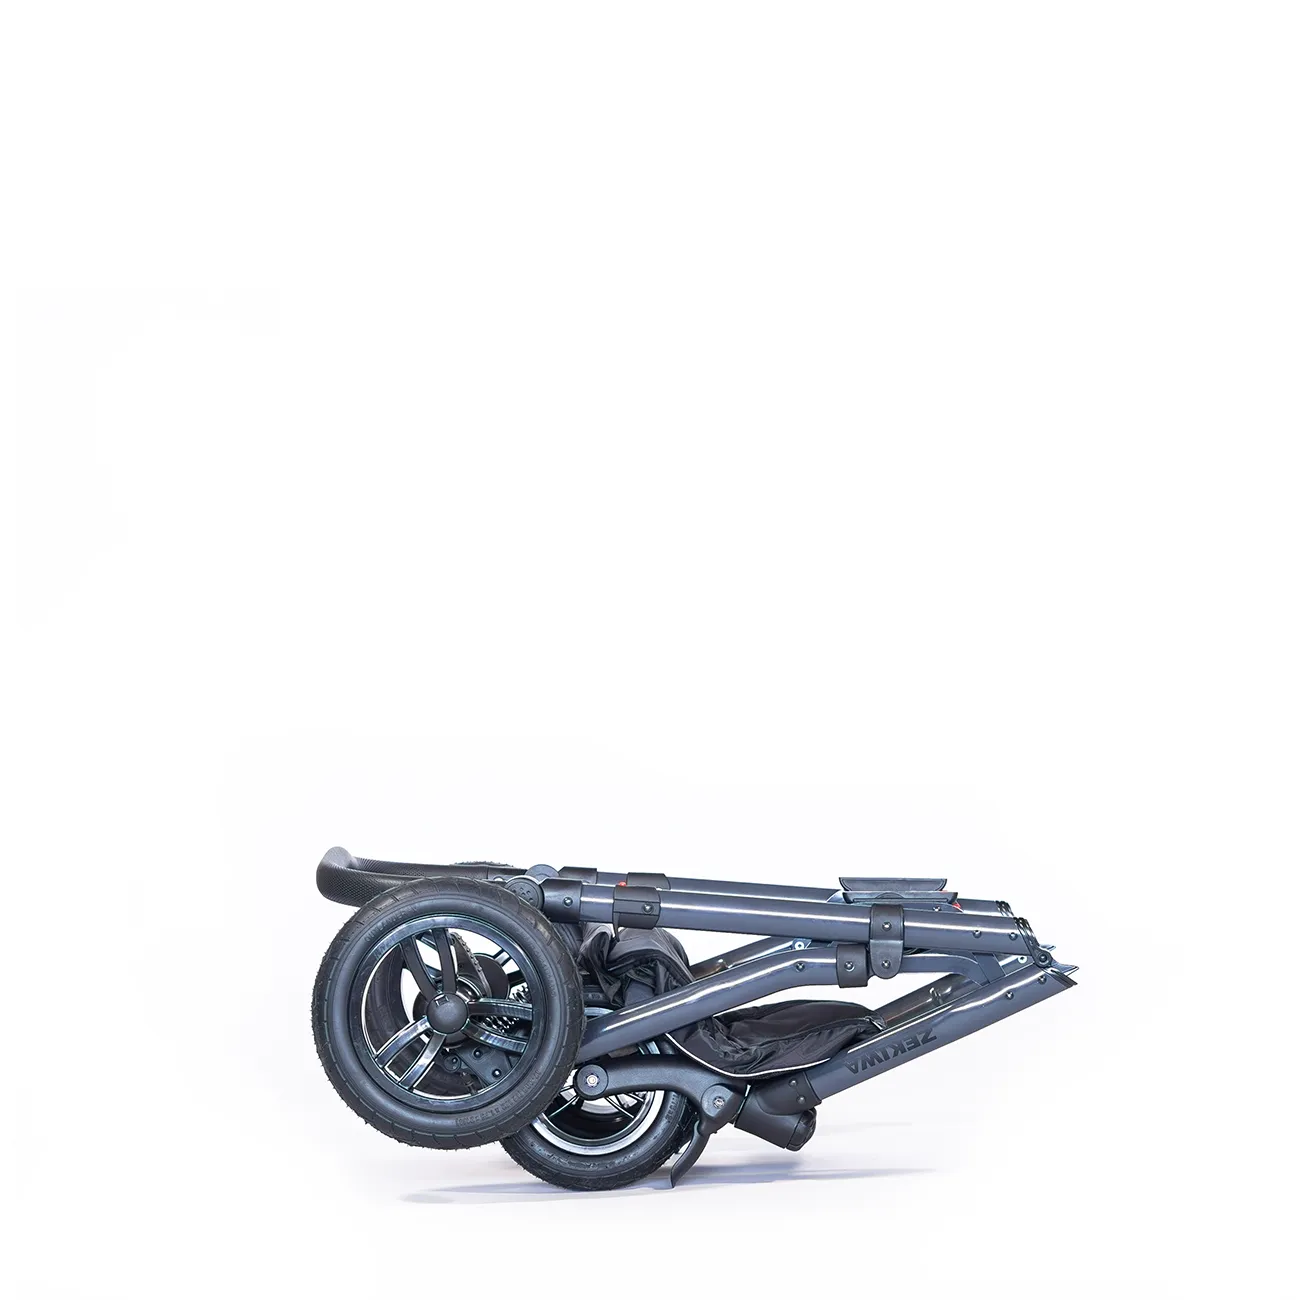 ZEKIWA 2 in 1 Kinderwagen [große Wanne] - robustes Gestell mit Antischocksystem + Sportwagenaufsatz + Regenschutz + Insektenschutz + Wickeltasche - Saturn Royal Green